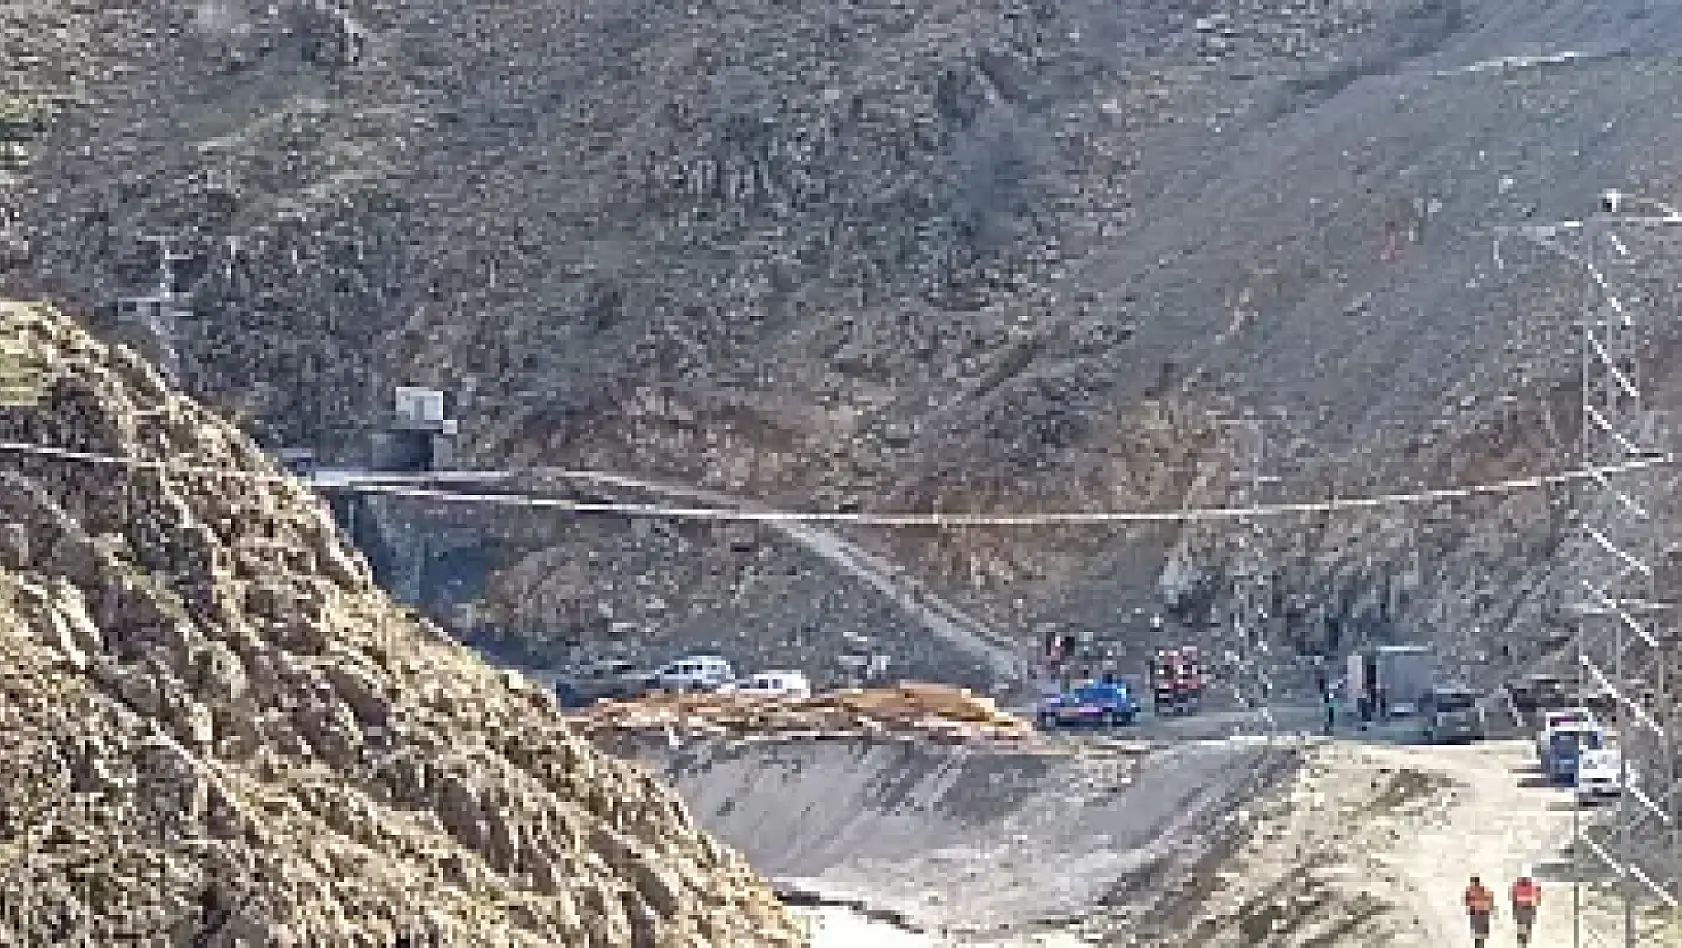 Alacakaya'da bir madende çökme meydana geldi: göçük altında kalan işçiler var